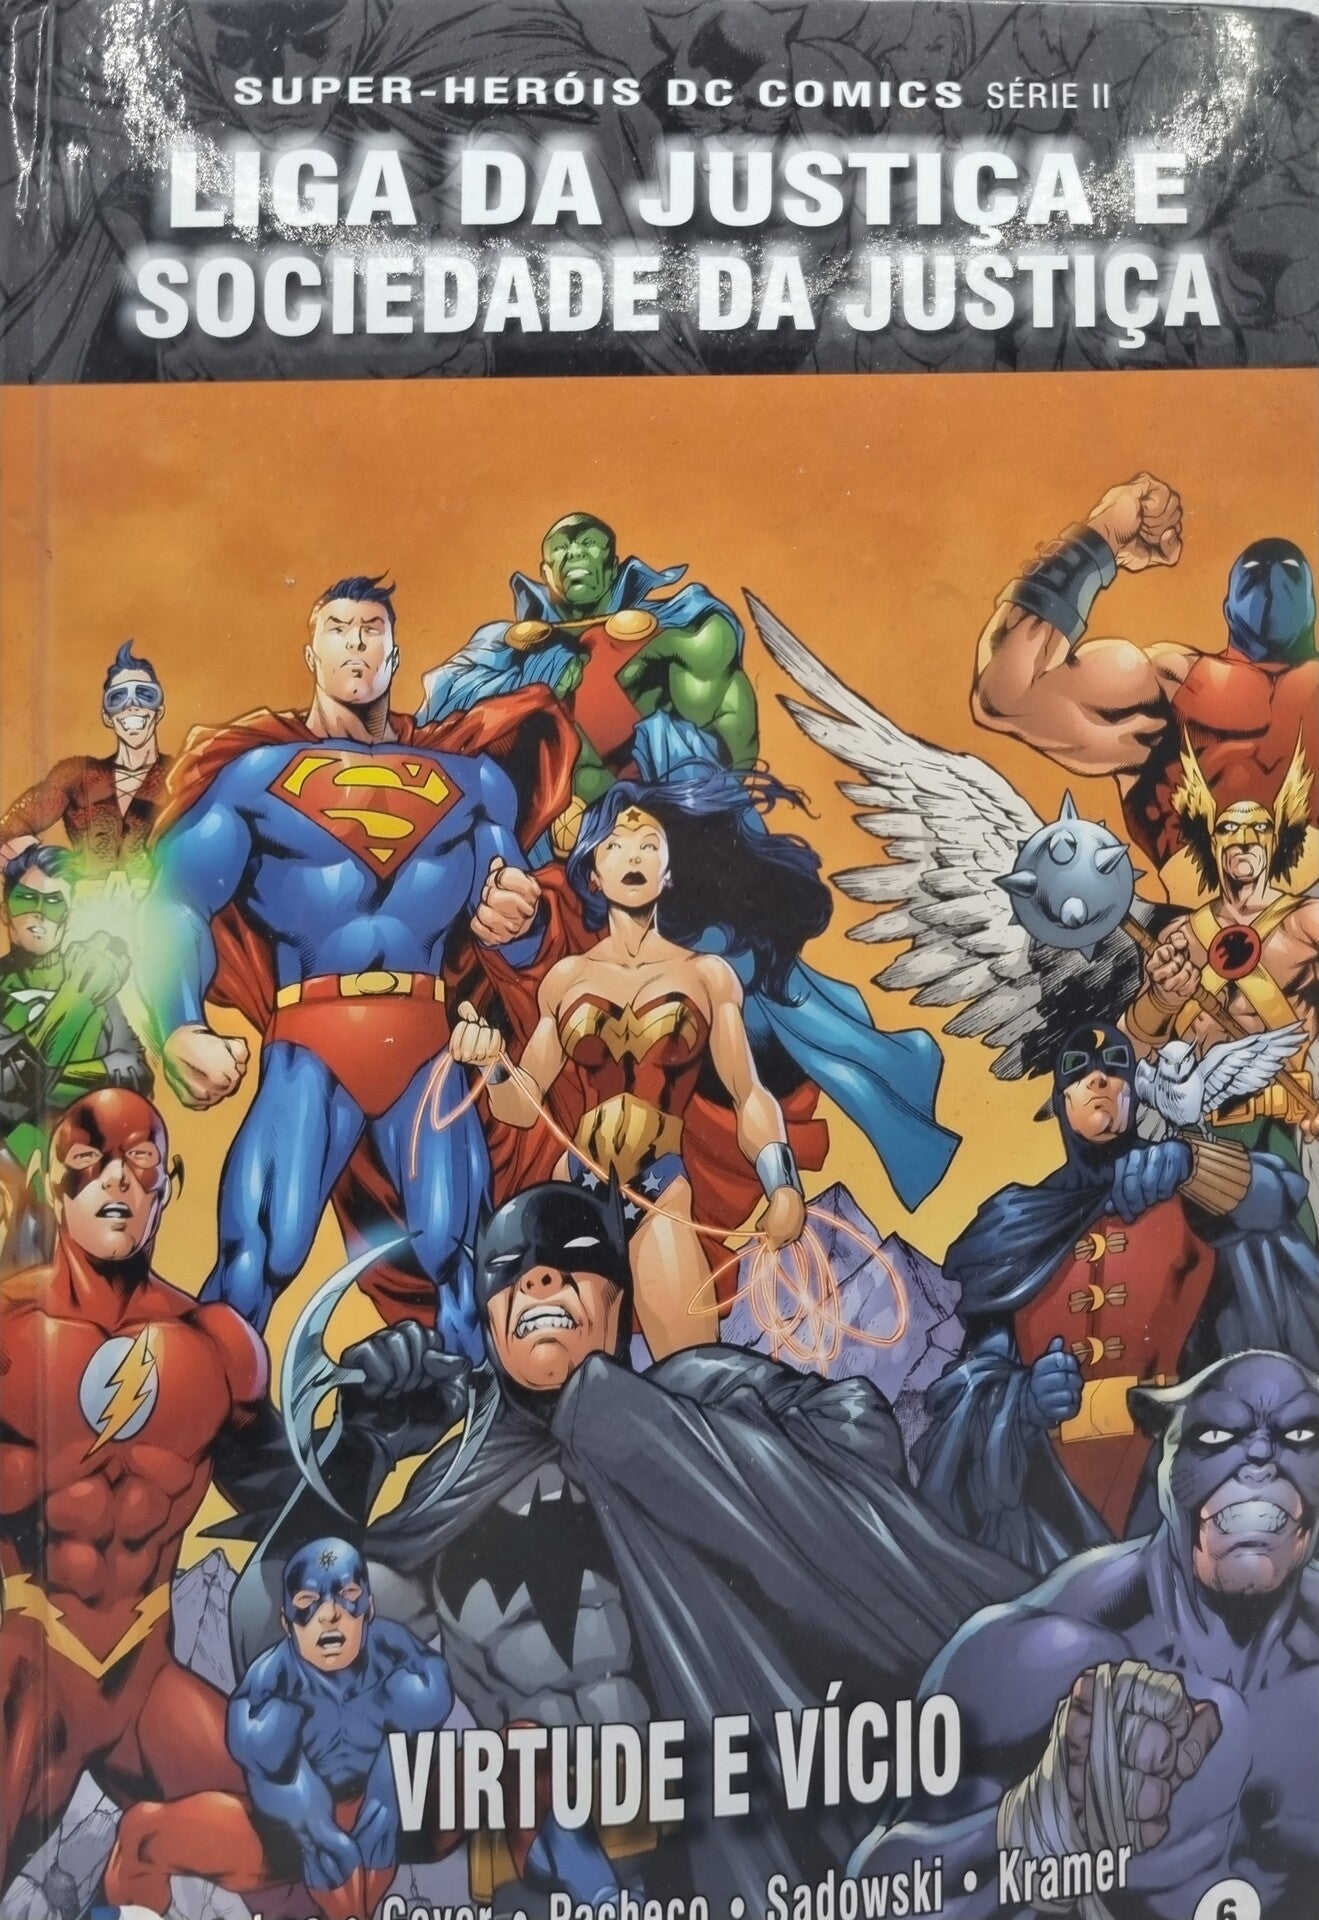 Liga da Justiça e Sociedade da Justiça: Virtude e Vício Colecção Super-Heróis DC Comics Série 2